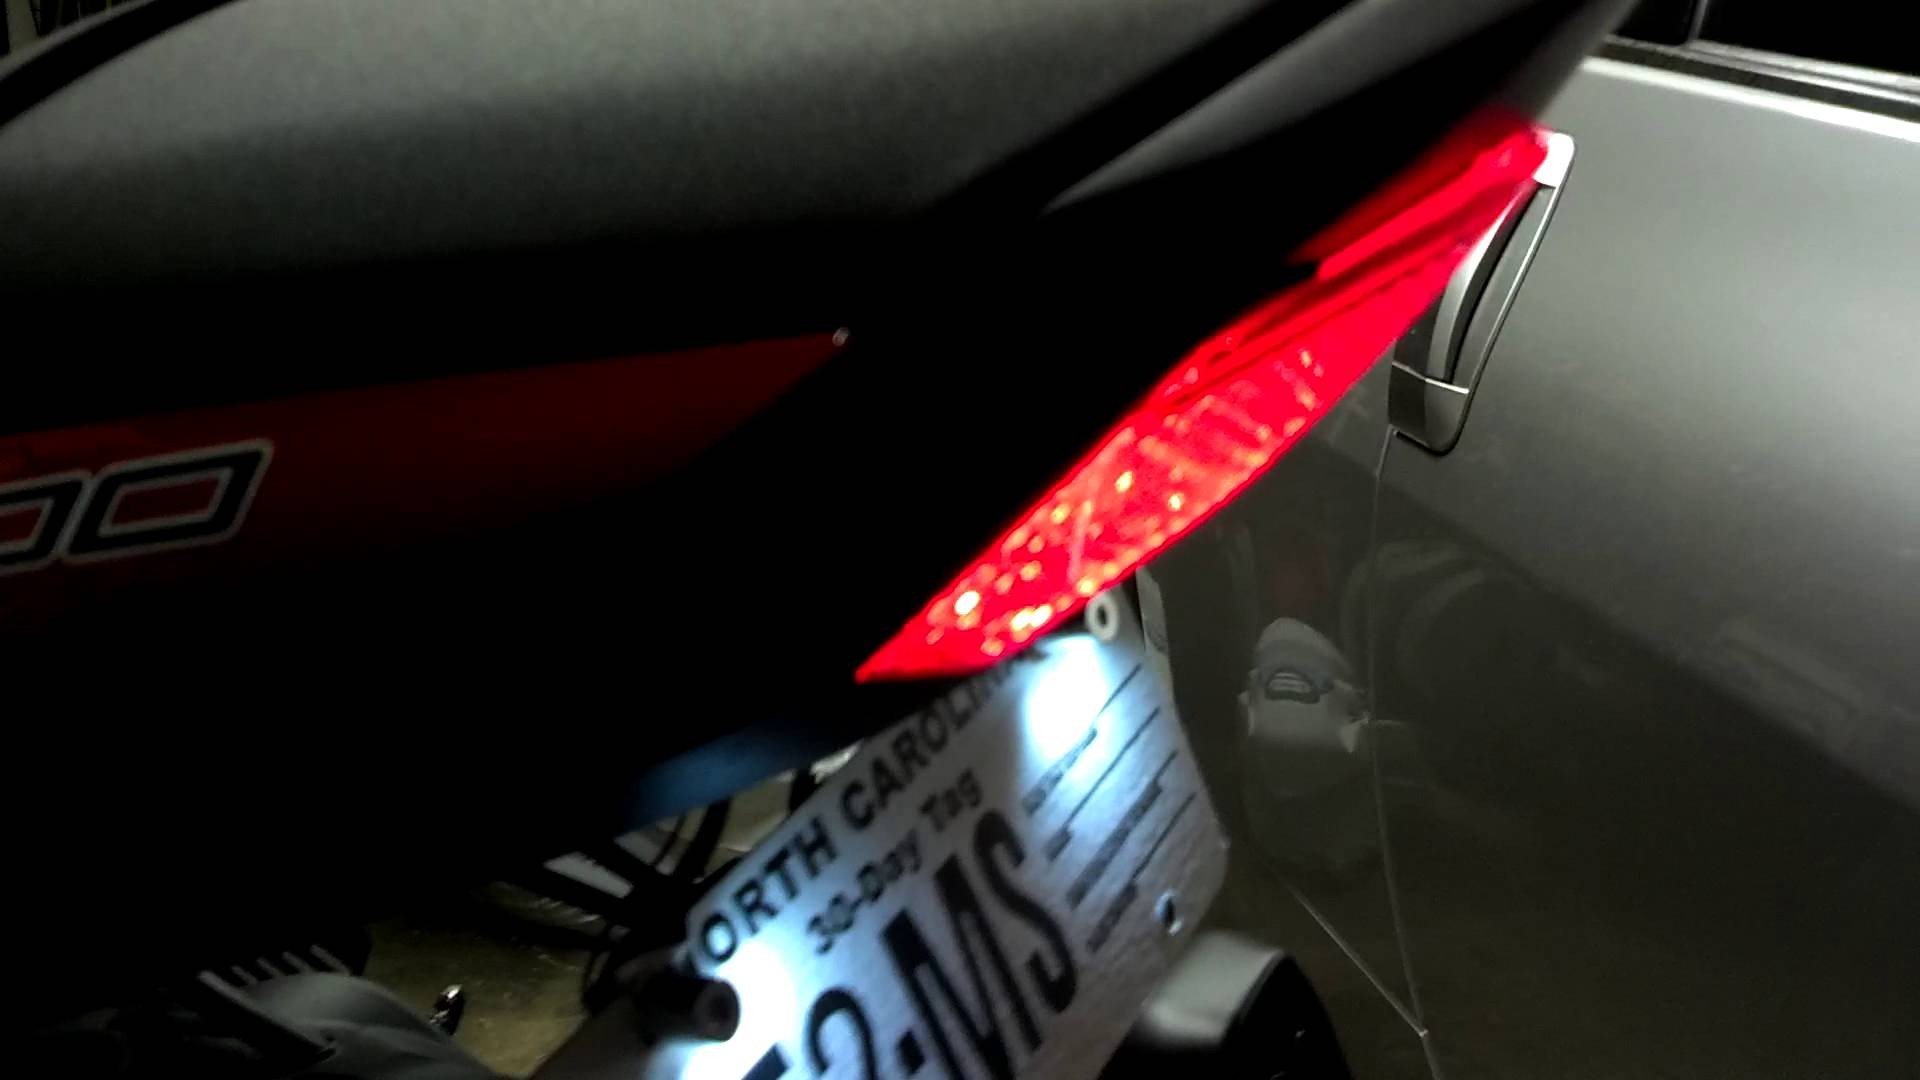 2012 Kawasaki ZX6R integrated tail light